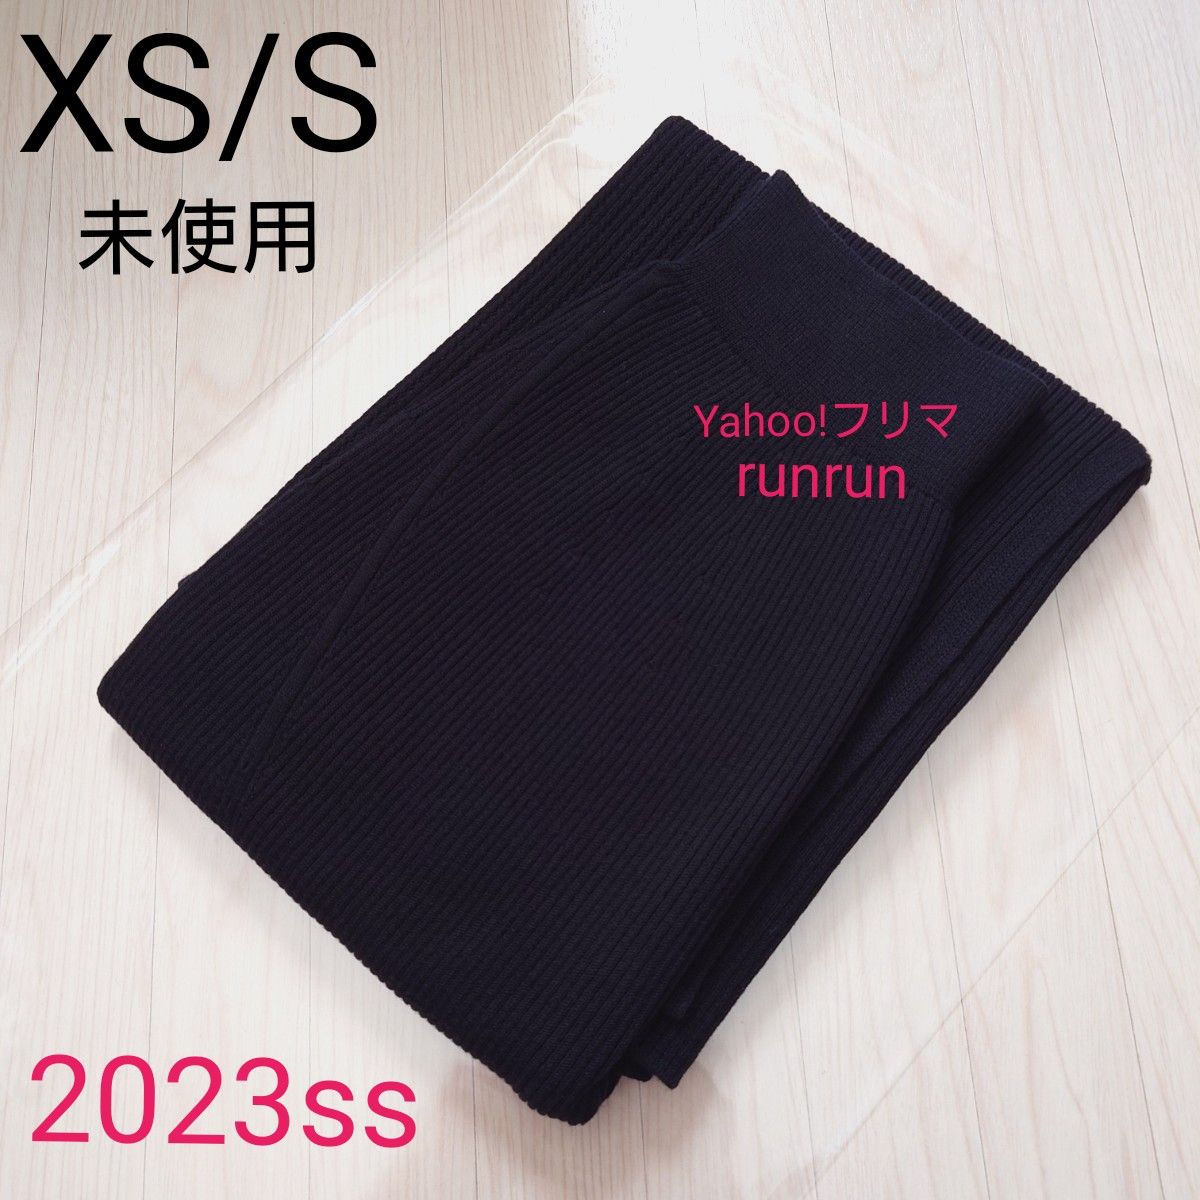 ユニクロ マメクロゴウチ 3Dリブロングスカート XS/S   ブラック mame kurogouchi  2023ss 未使用品